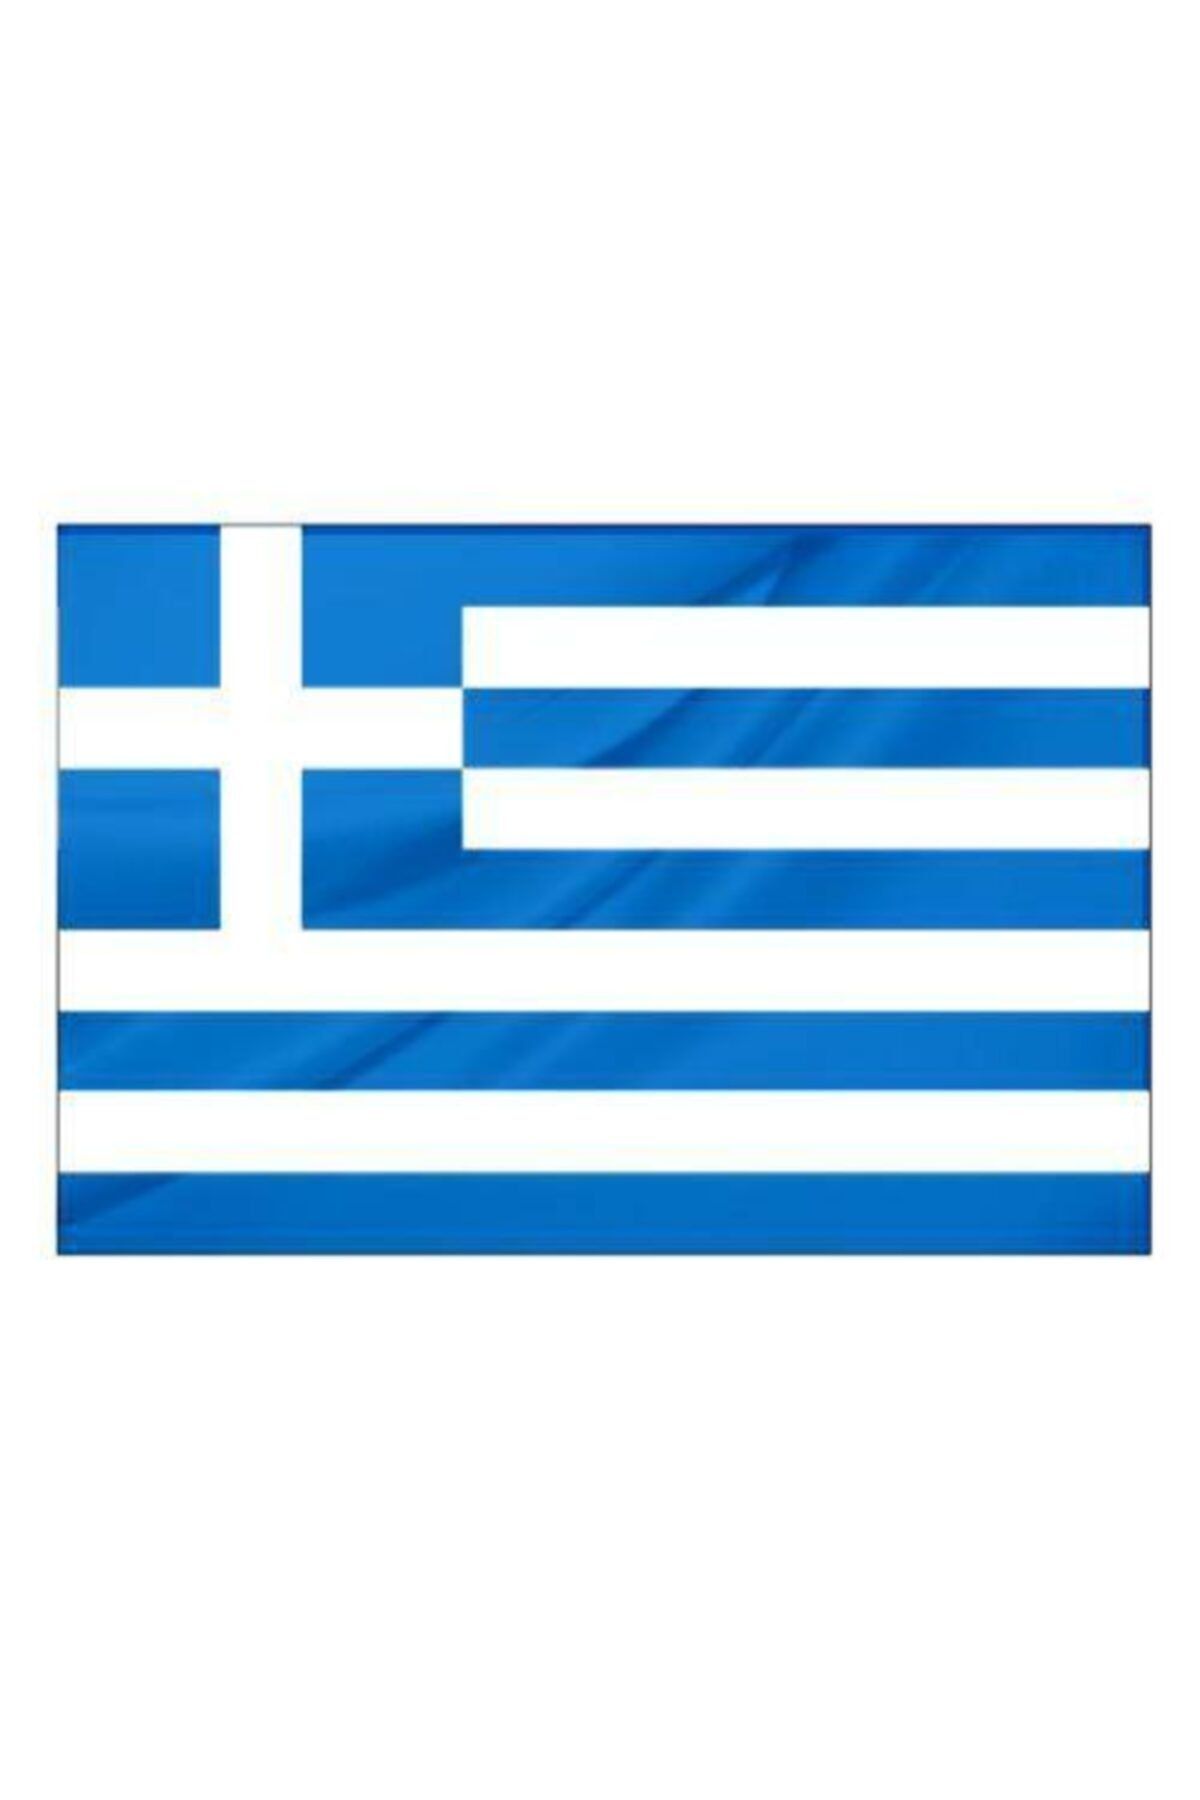 Rekbay Yunanistan Ülke Bayrağı 1.sınıf Parlak Kumaş 100x150 cm